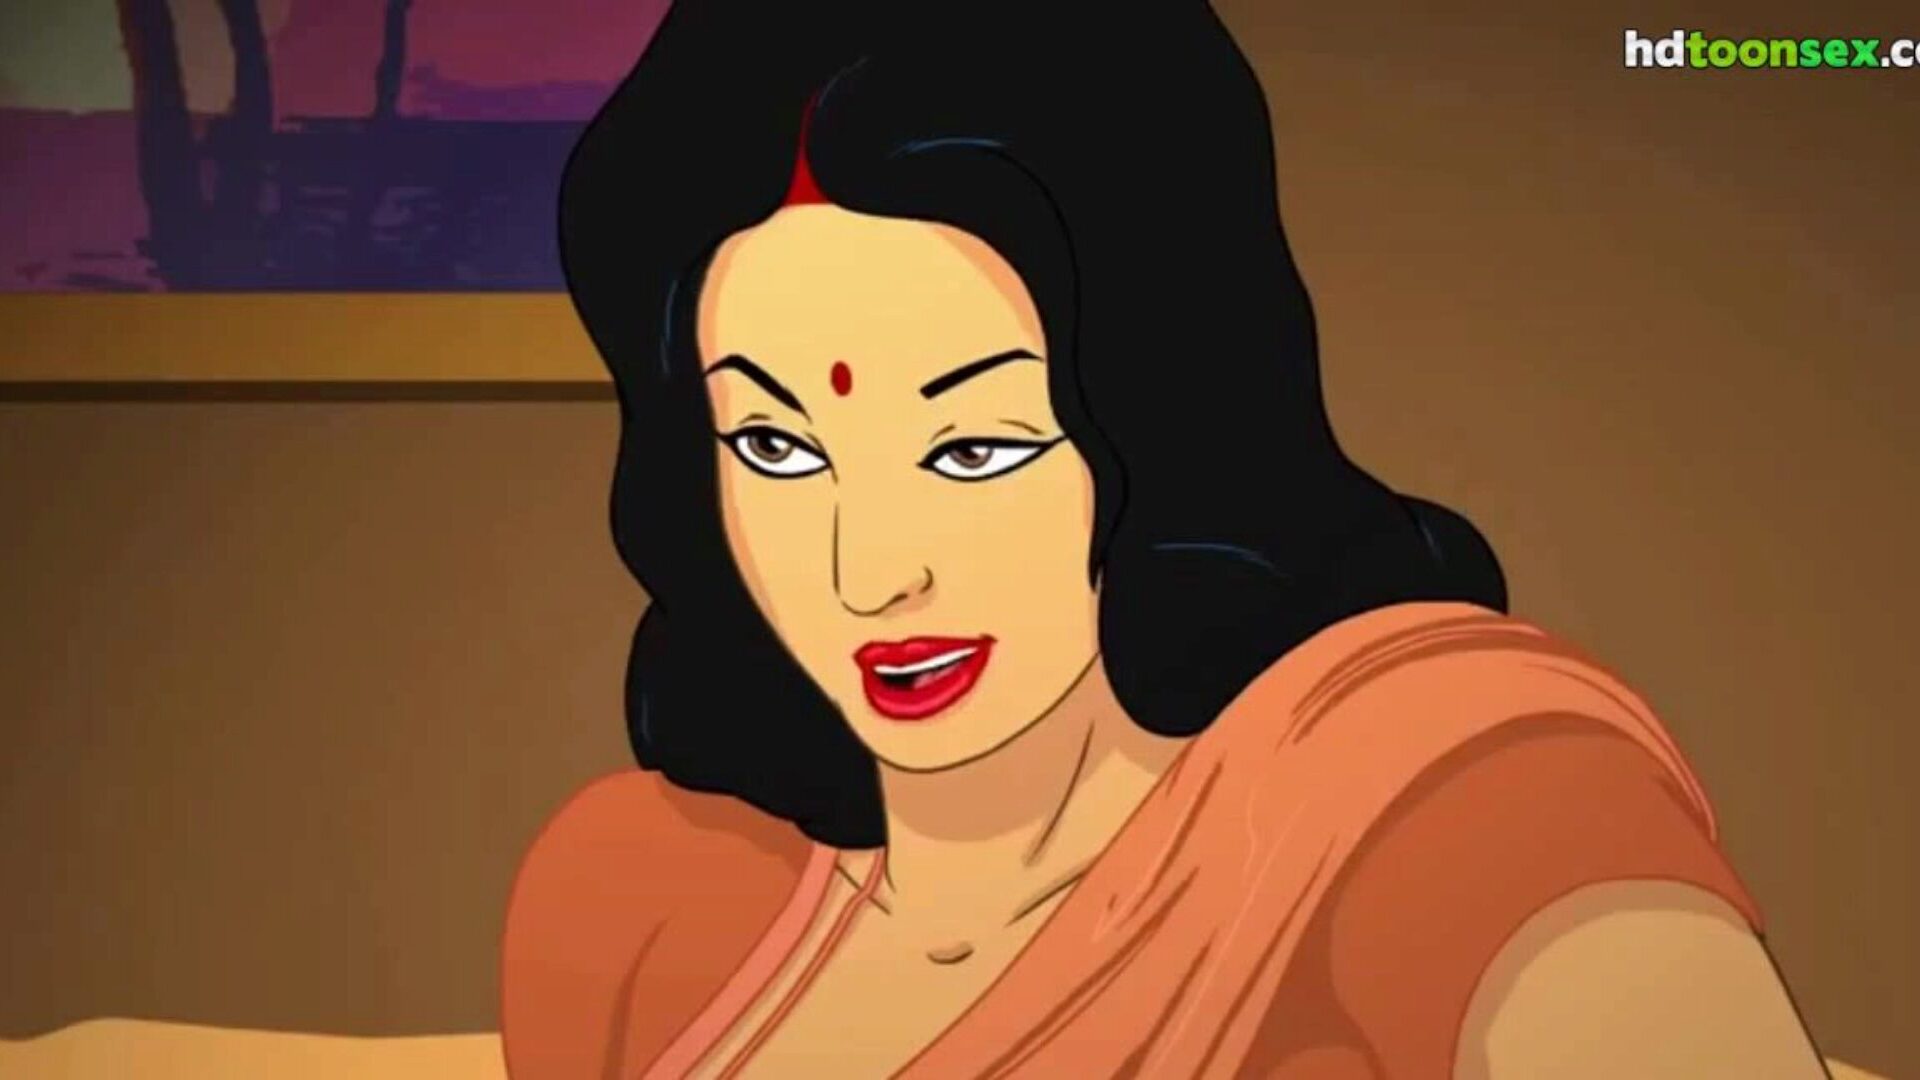 المهاراتية الهندية الأم مثير تون الرسوم المتحركة